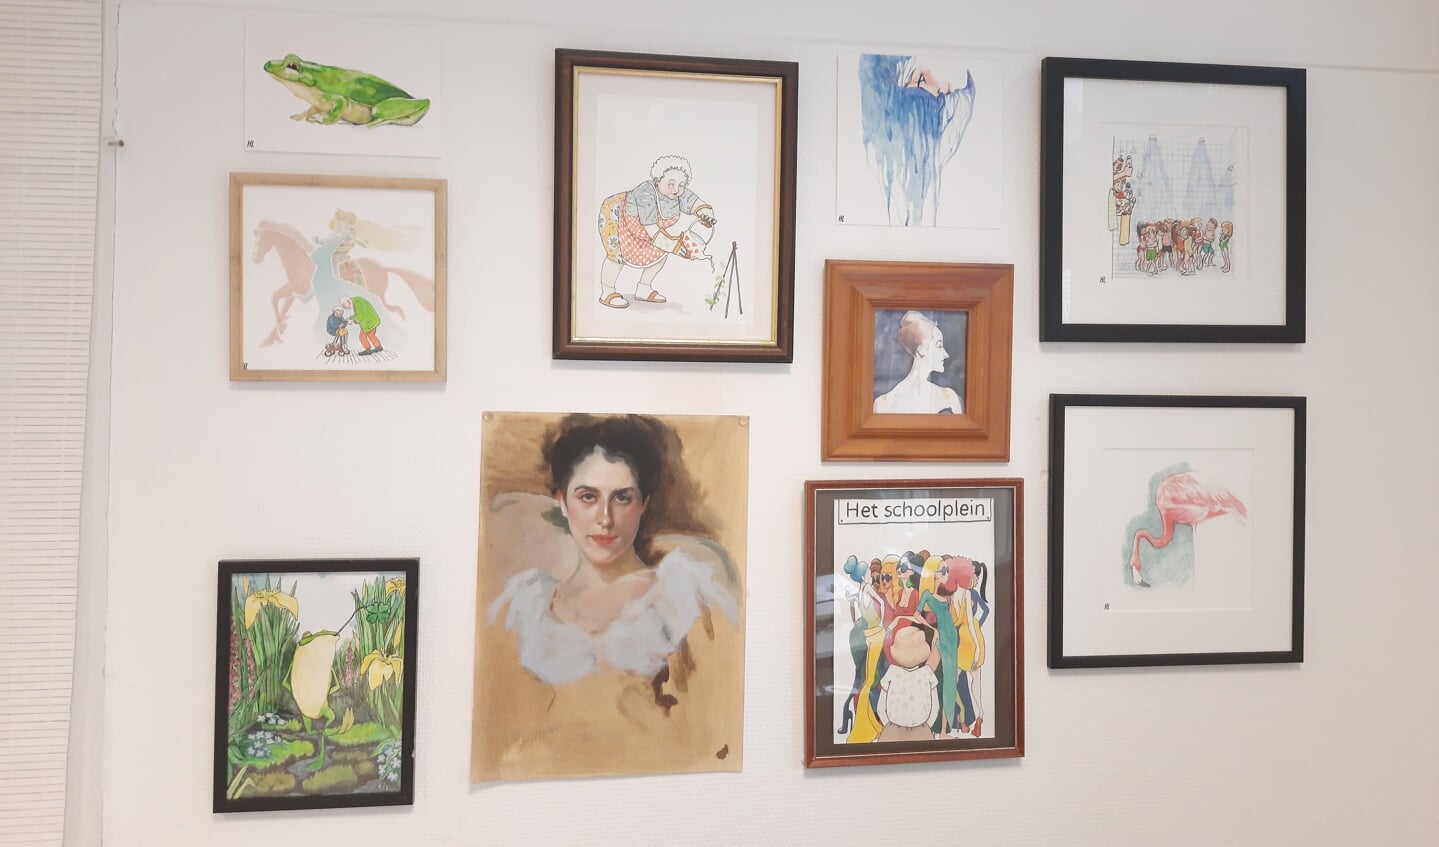 Enkele werken van Hanna Looye hangen in het atelier aan de wand.